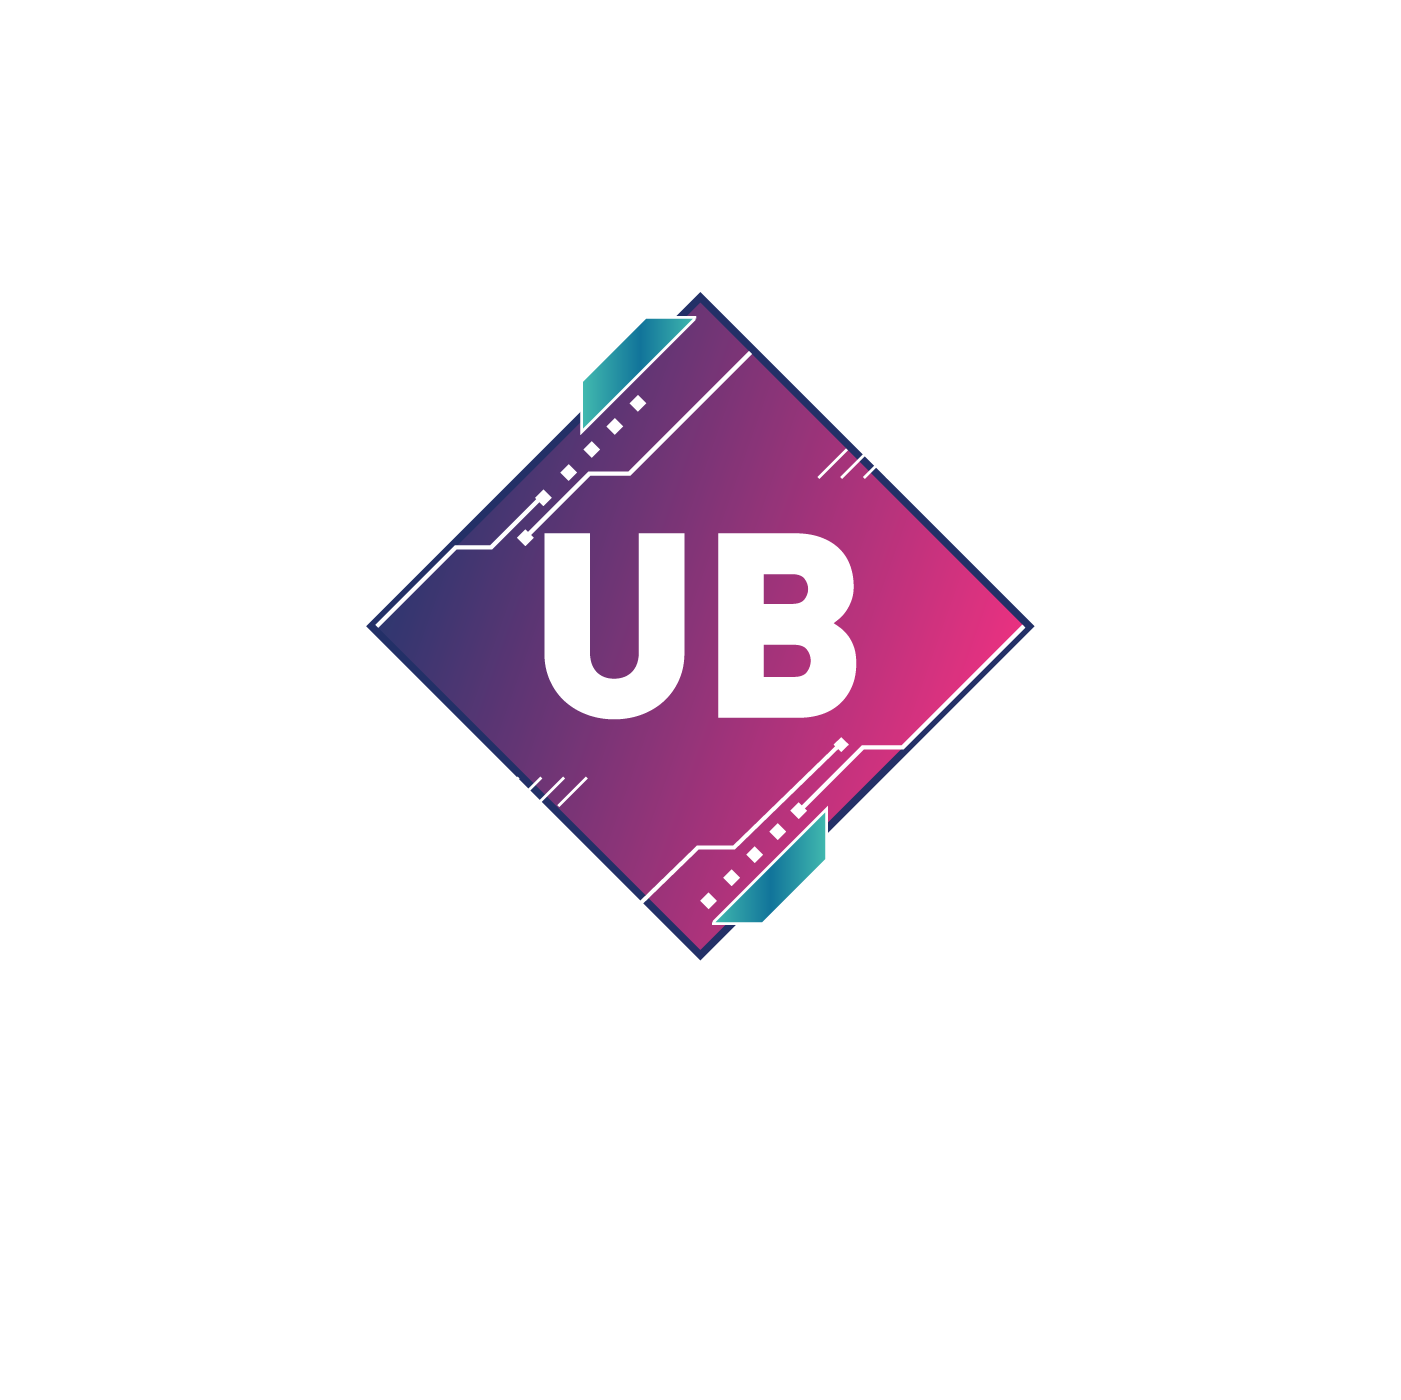 ubhub logo